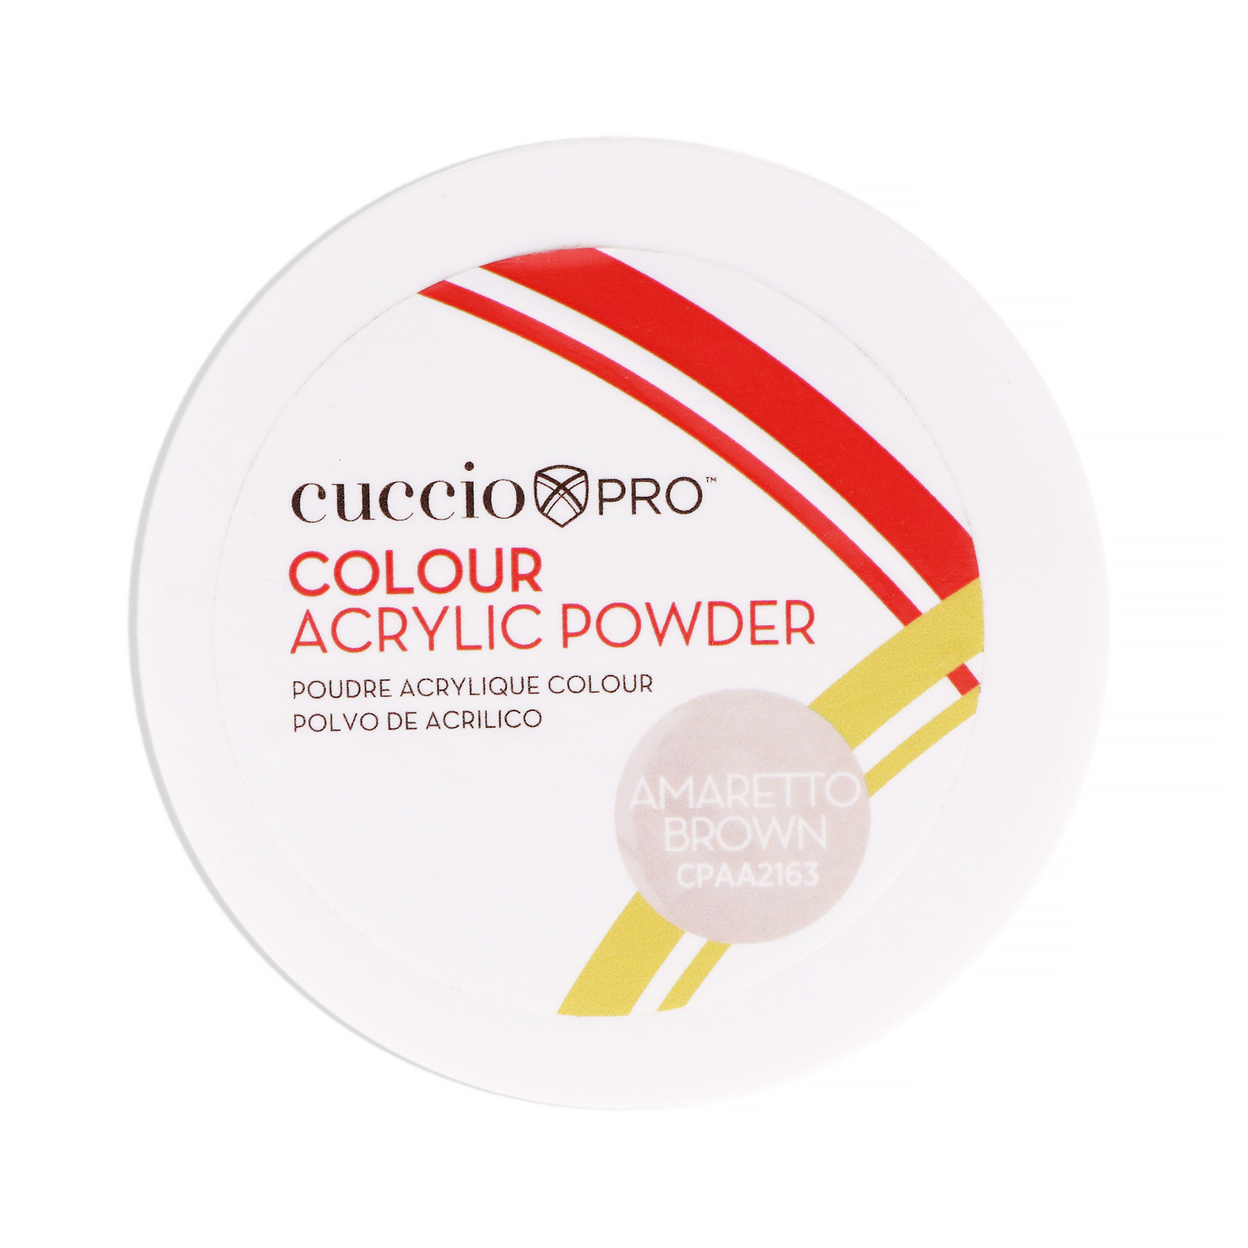 Cuccio PRO Colour Acrylic Powder - Amaretto Brown 1.6 Oz